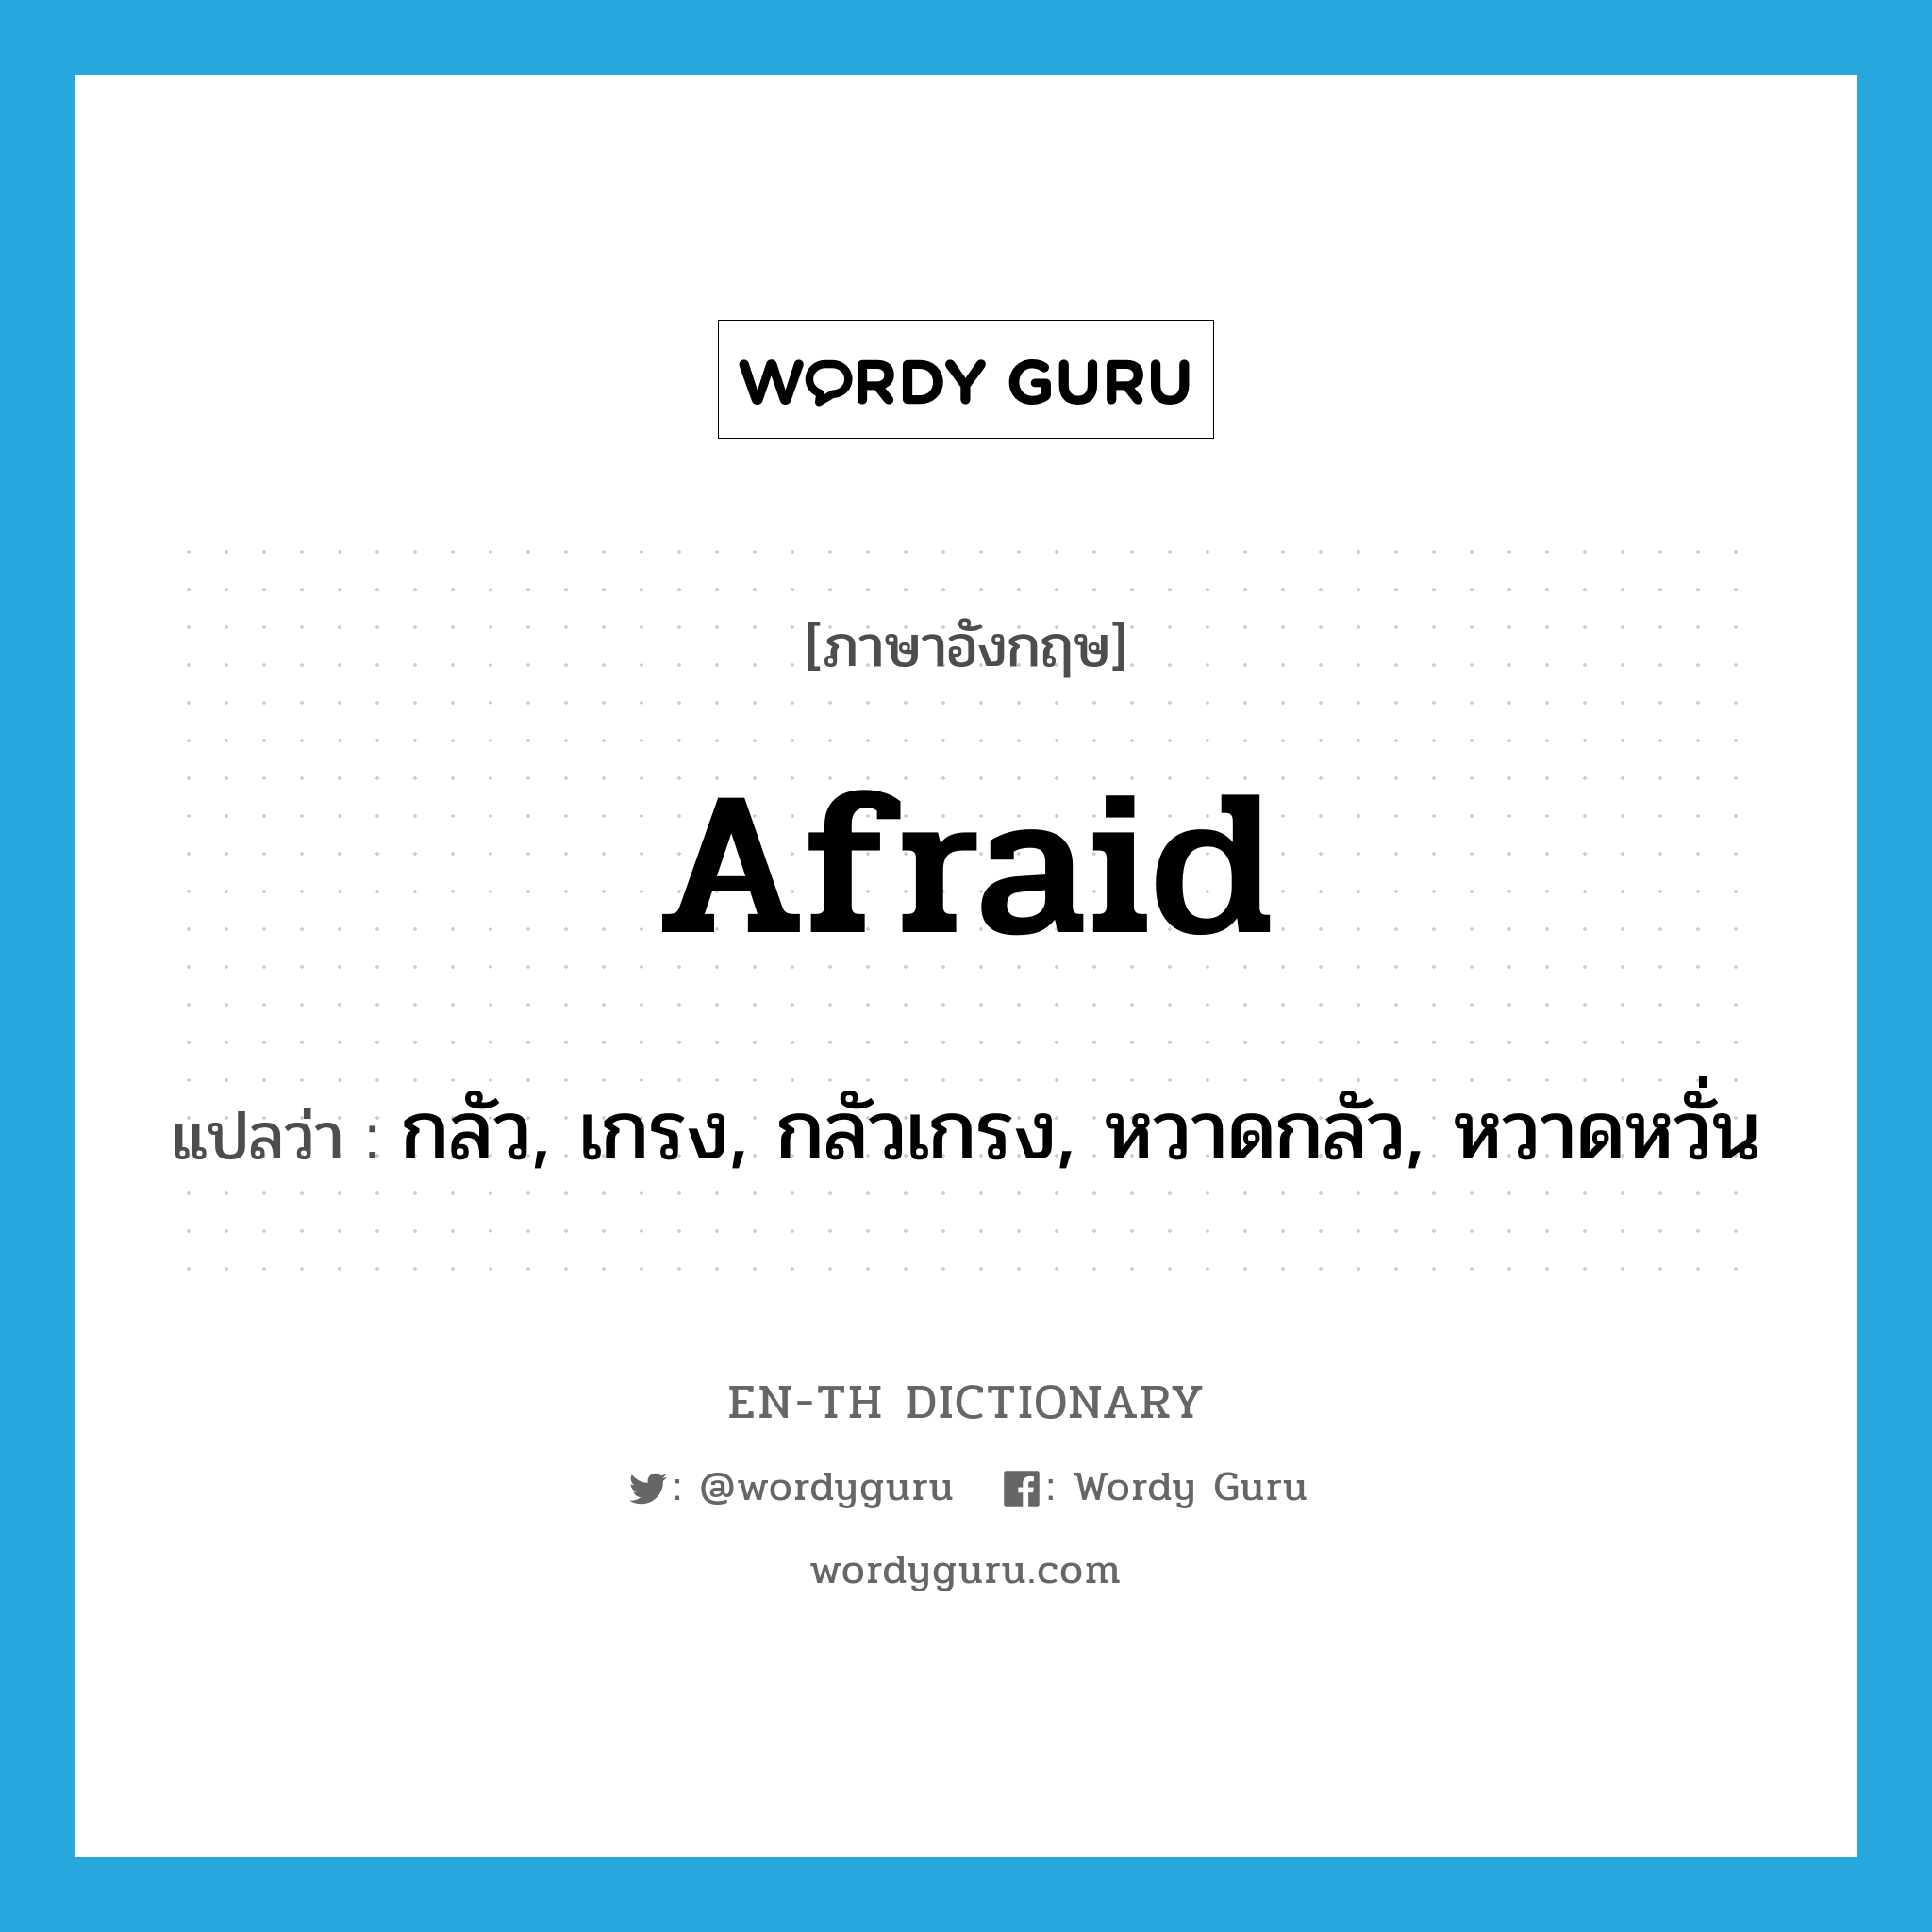 กลัว, เกรง, กลัวเกรง, หวาดกลัว, หวาดหวั่น ภาษาอังกฤษ?, คำศัพท์ภาษาอังกฤษ กลัว, เกรง, กลัวเกรง, หวาดกลัว, หวาดหวั่น แปลว่า afraid ประเภท ADJ หมวด ADJ